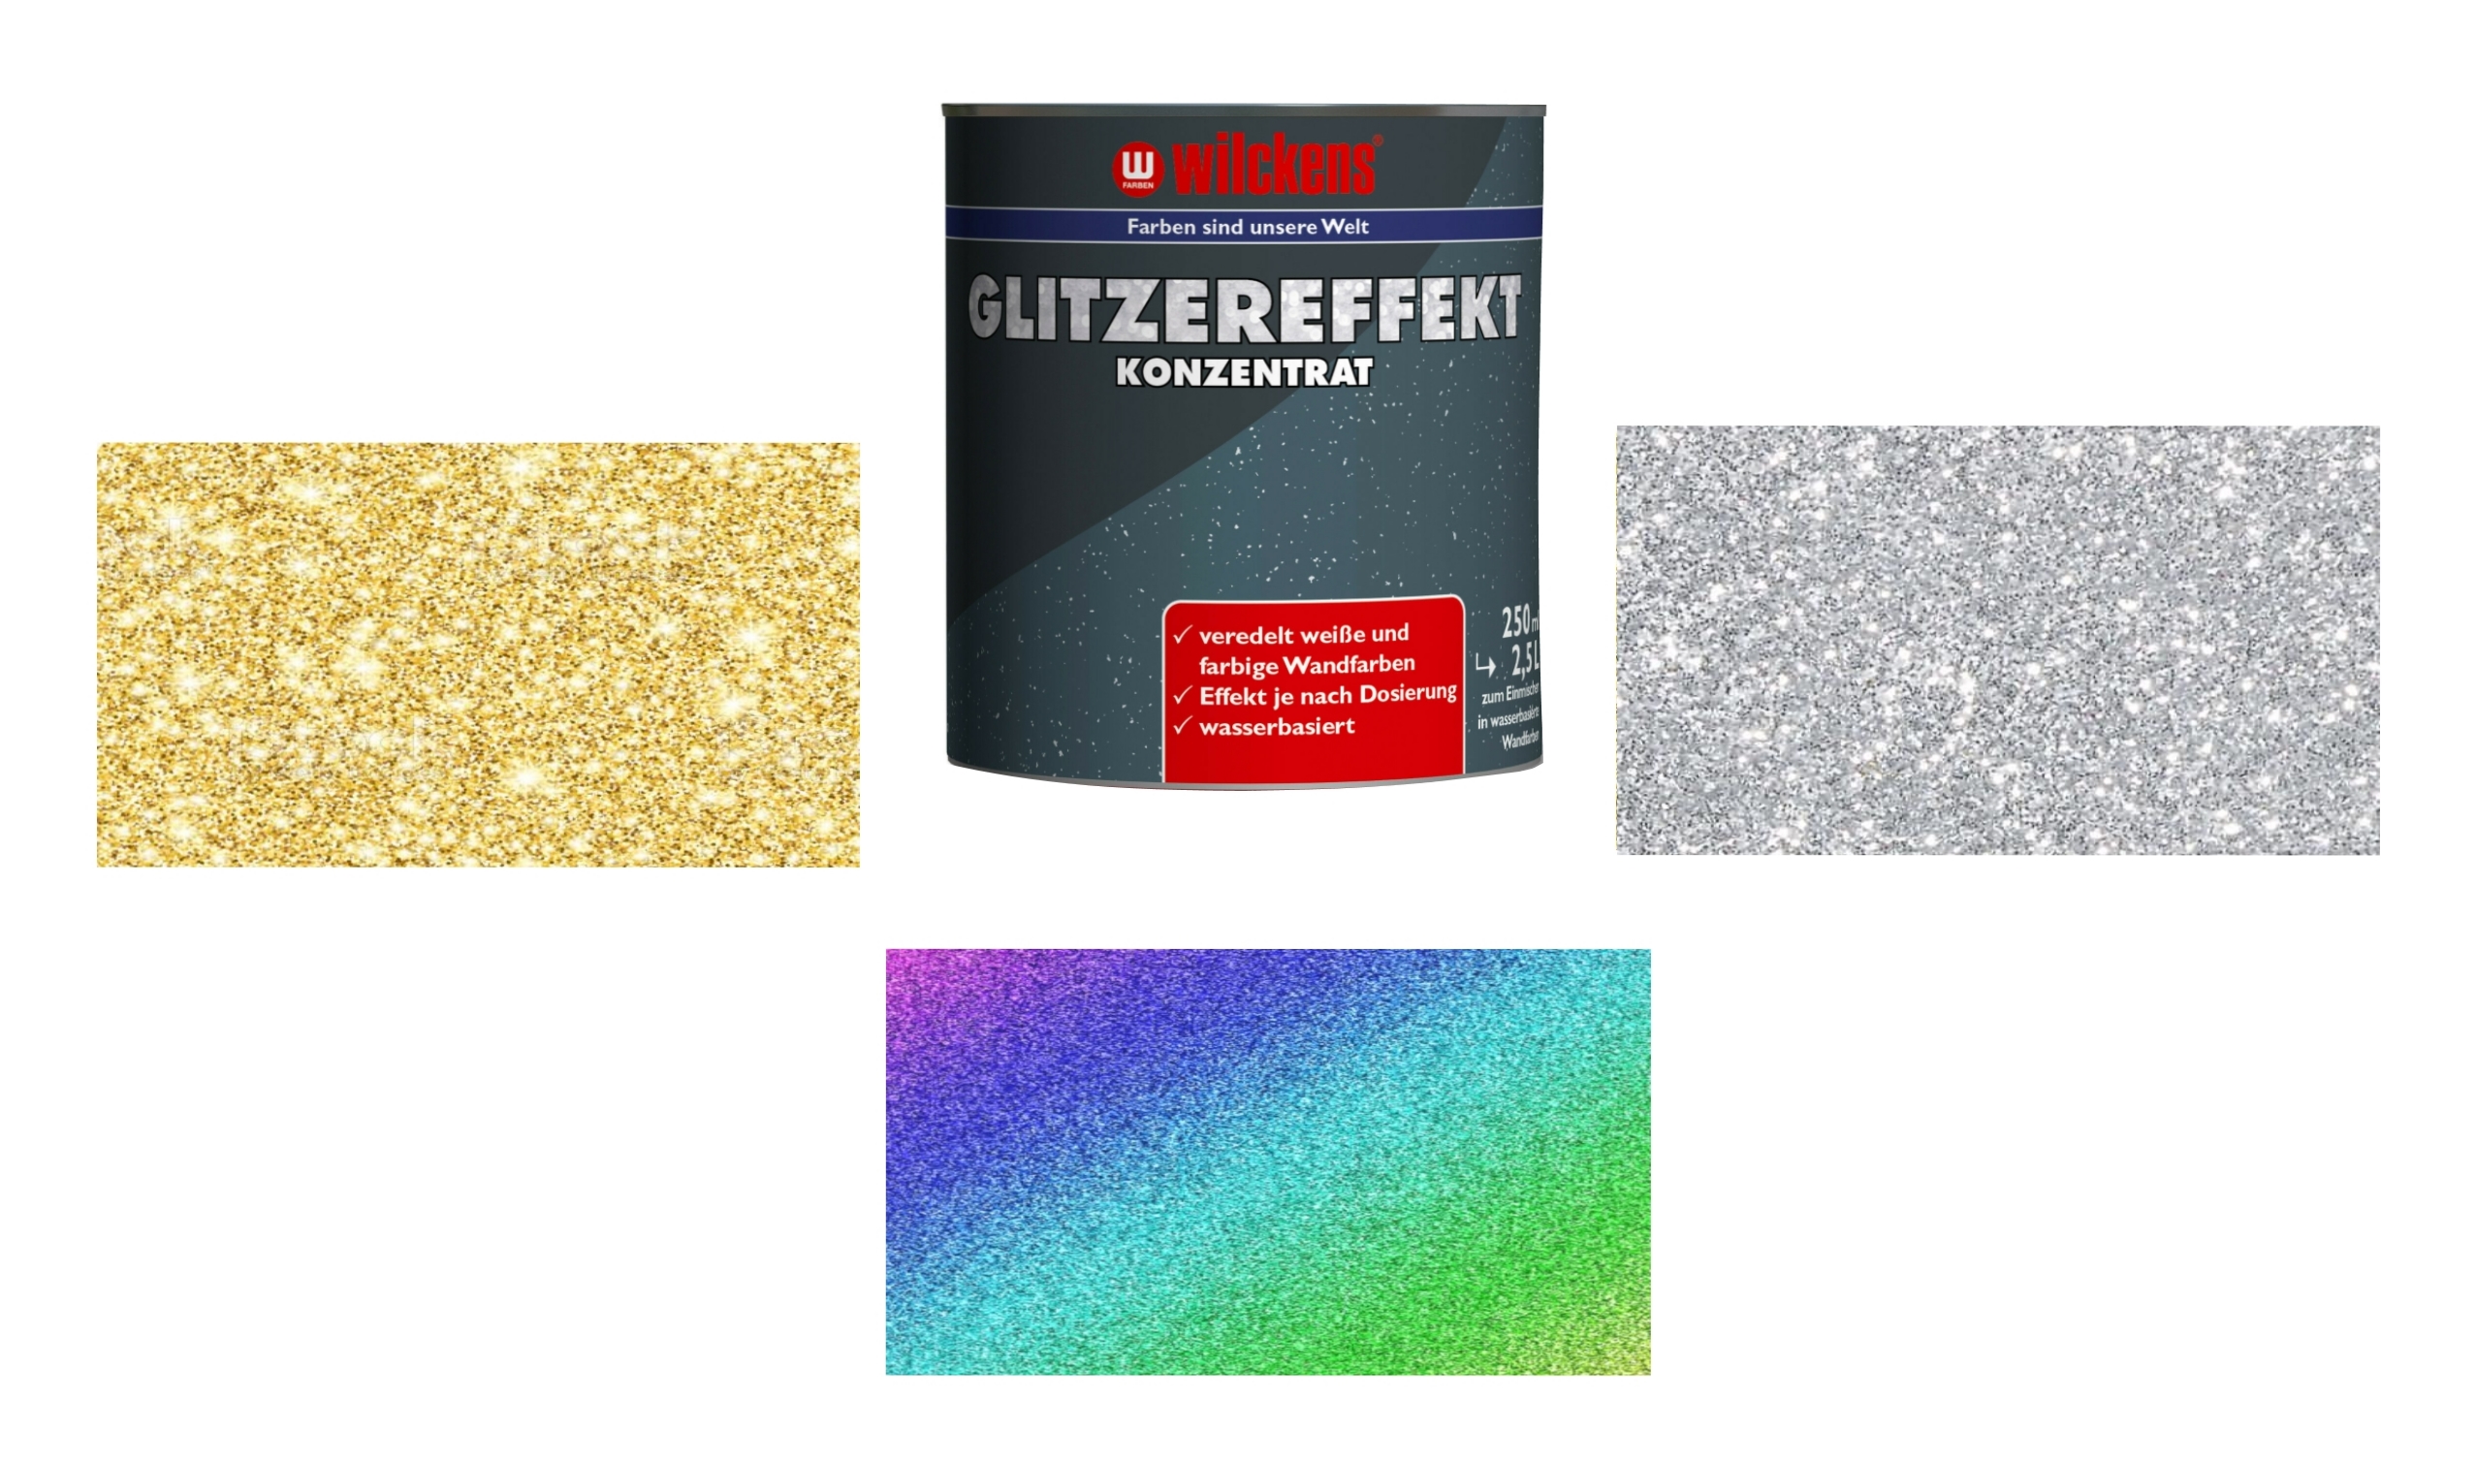 Glitzereffekt Konzentrat Glitzer Zusatz für Wandfarben und Lacke 250 ml Wilckens